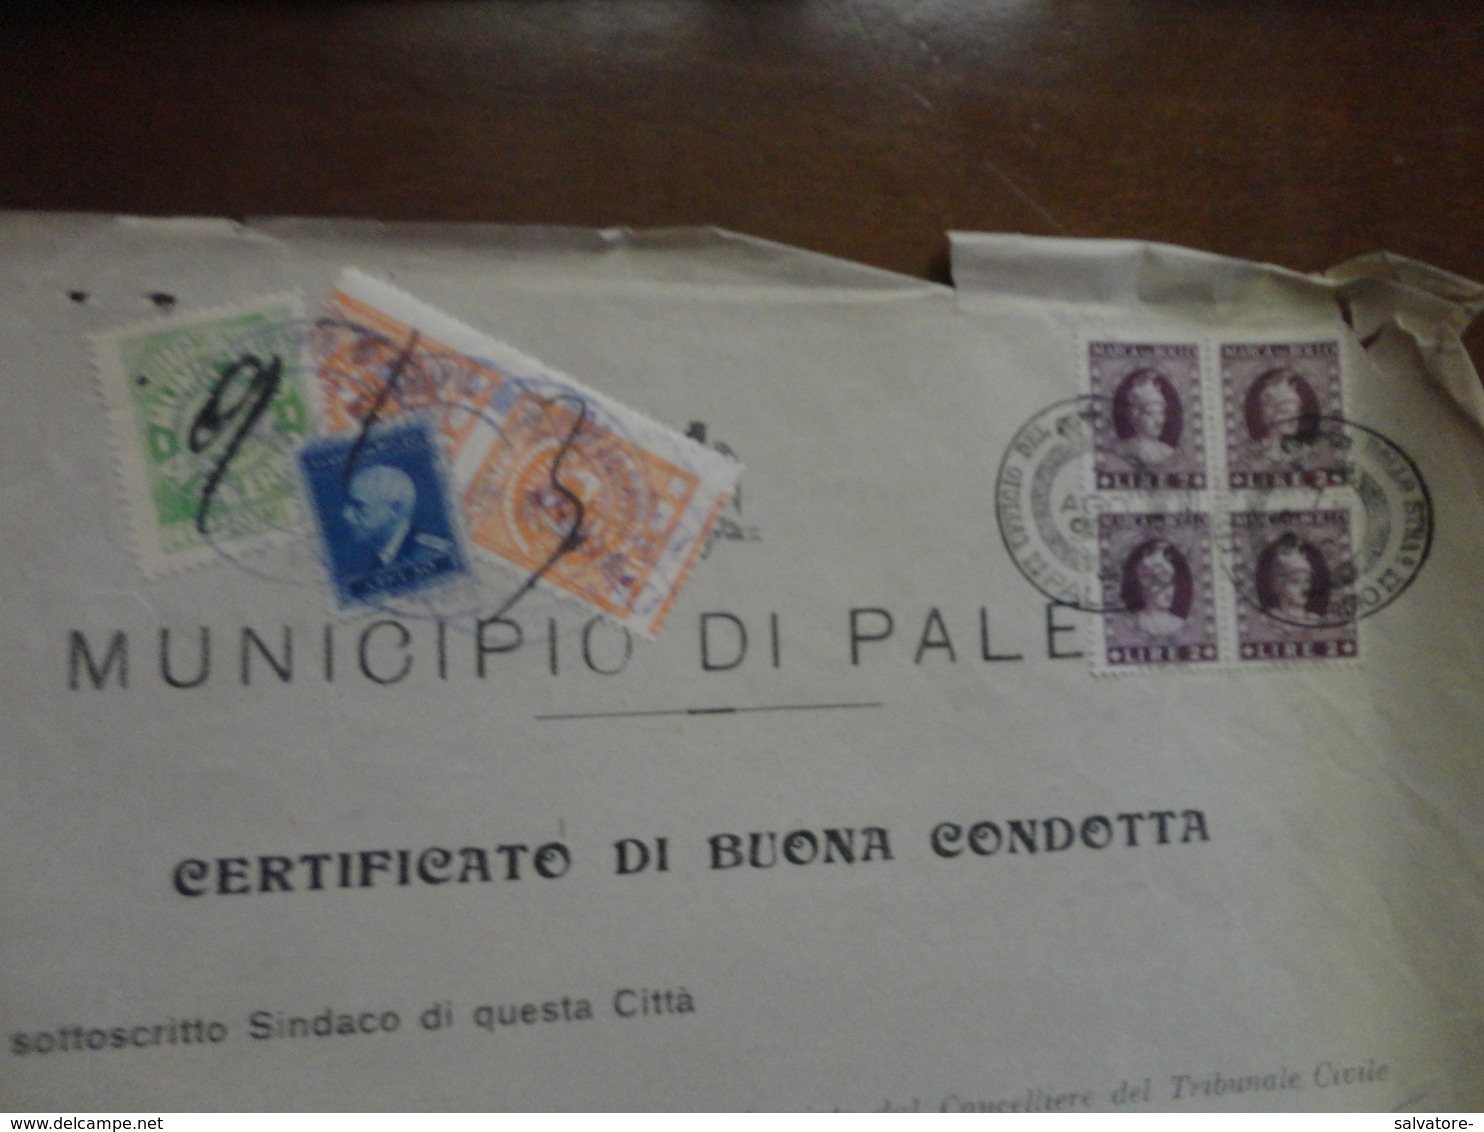 MARCHE DA BOLLO COPPIA LIRE 2 COMUNE PALERMO+QUARTINA VALORI GEMELLI LIRE 2+ALTRE 2-1946 - Revenue Stamps